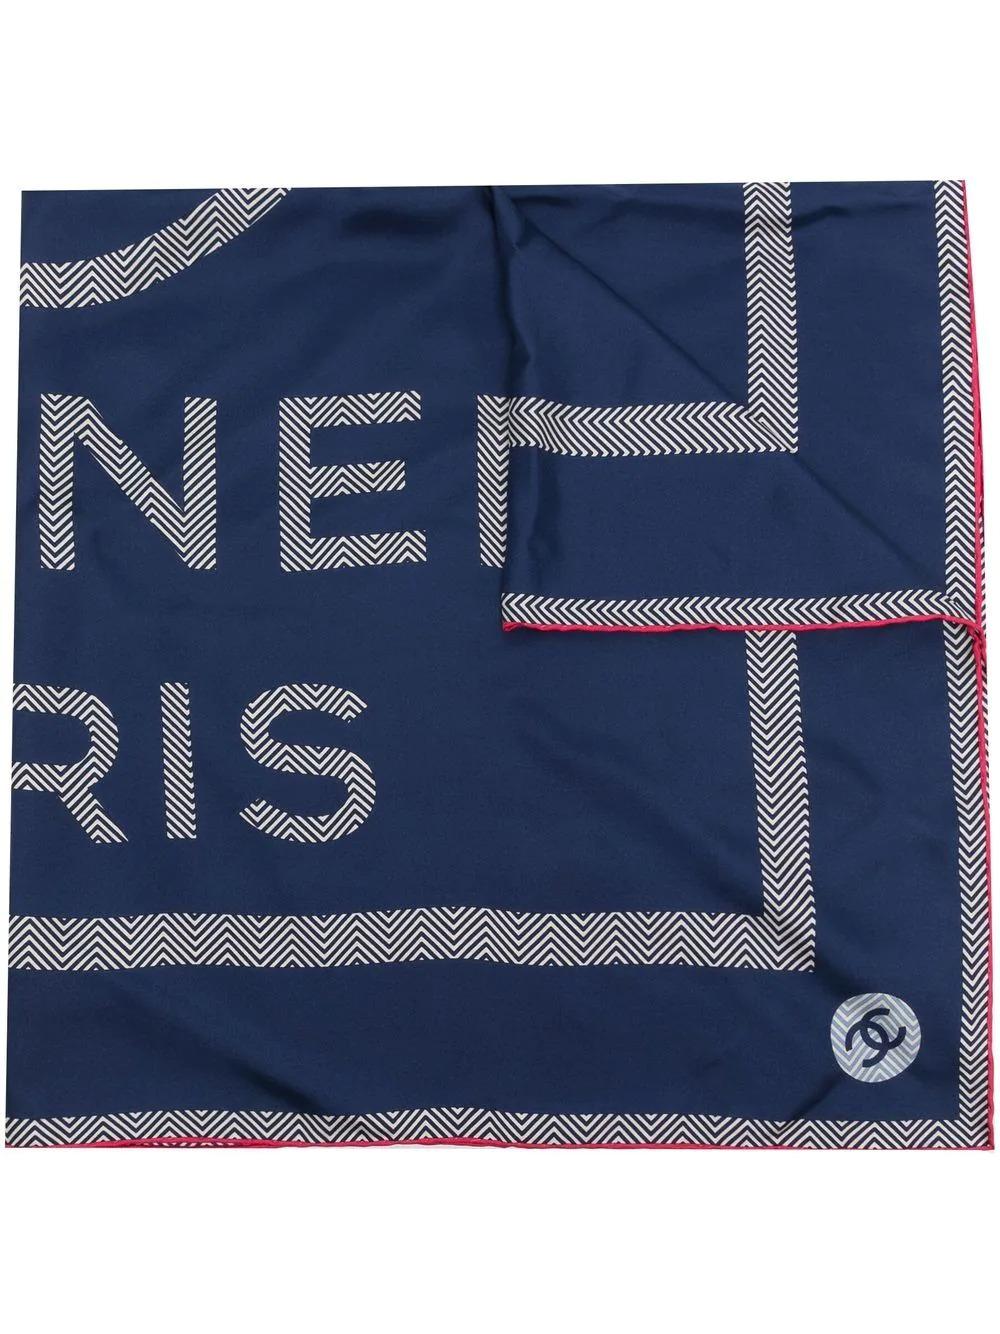 Confectionné en soie, ce foulard d'occasion en soie marine de Chanel affiche le logo CC emblématique de la marque et est orné d'une bordure fuchsia. Attachez-la à votre cou ou aux poignées d'un sac à main.

Couleur : marine/rose

Composition :
Corps